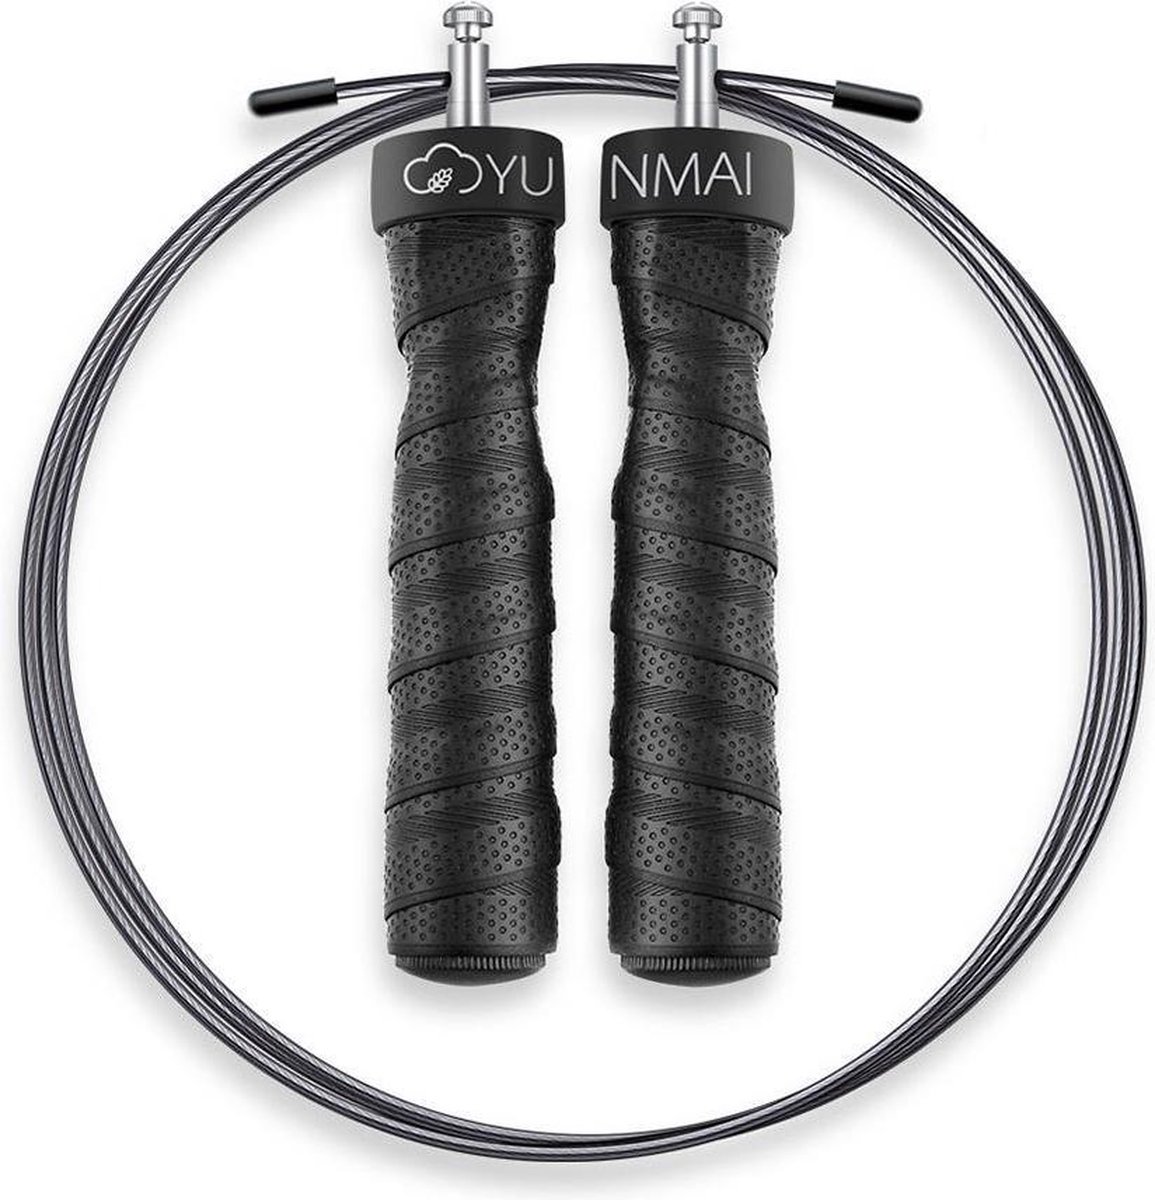 Yunmai verzwaard & verstelbaar Springtouw PRO - Speed Ropes met uitneembaar gewicht & kogellagers